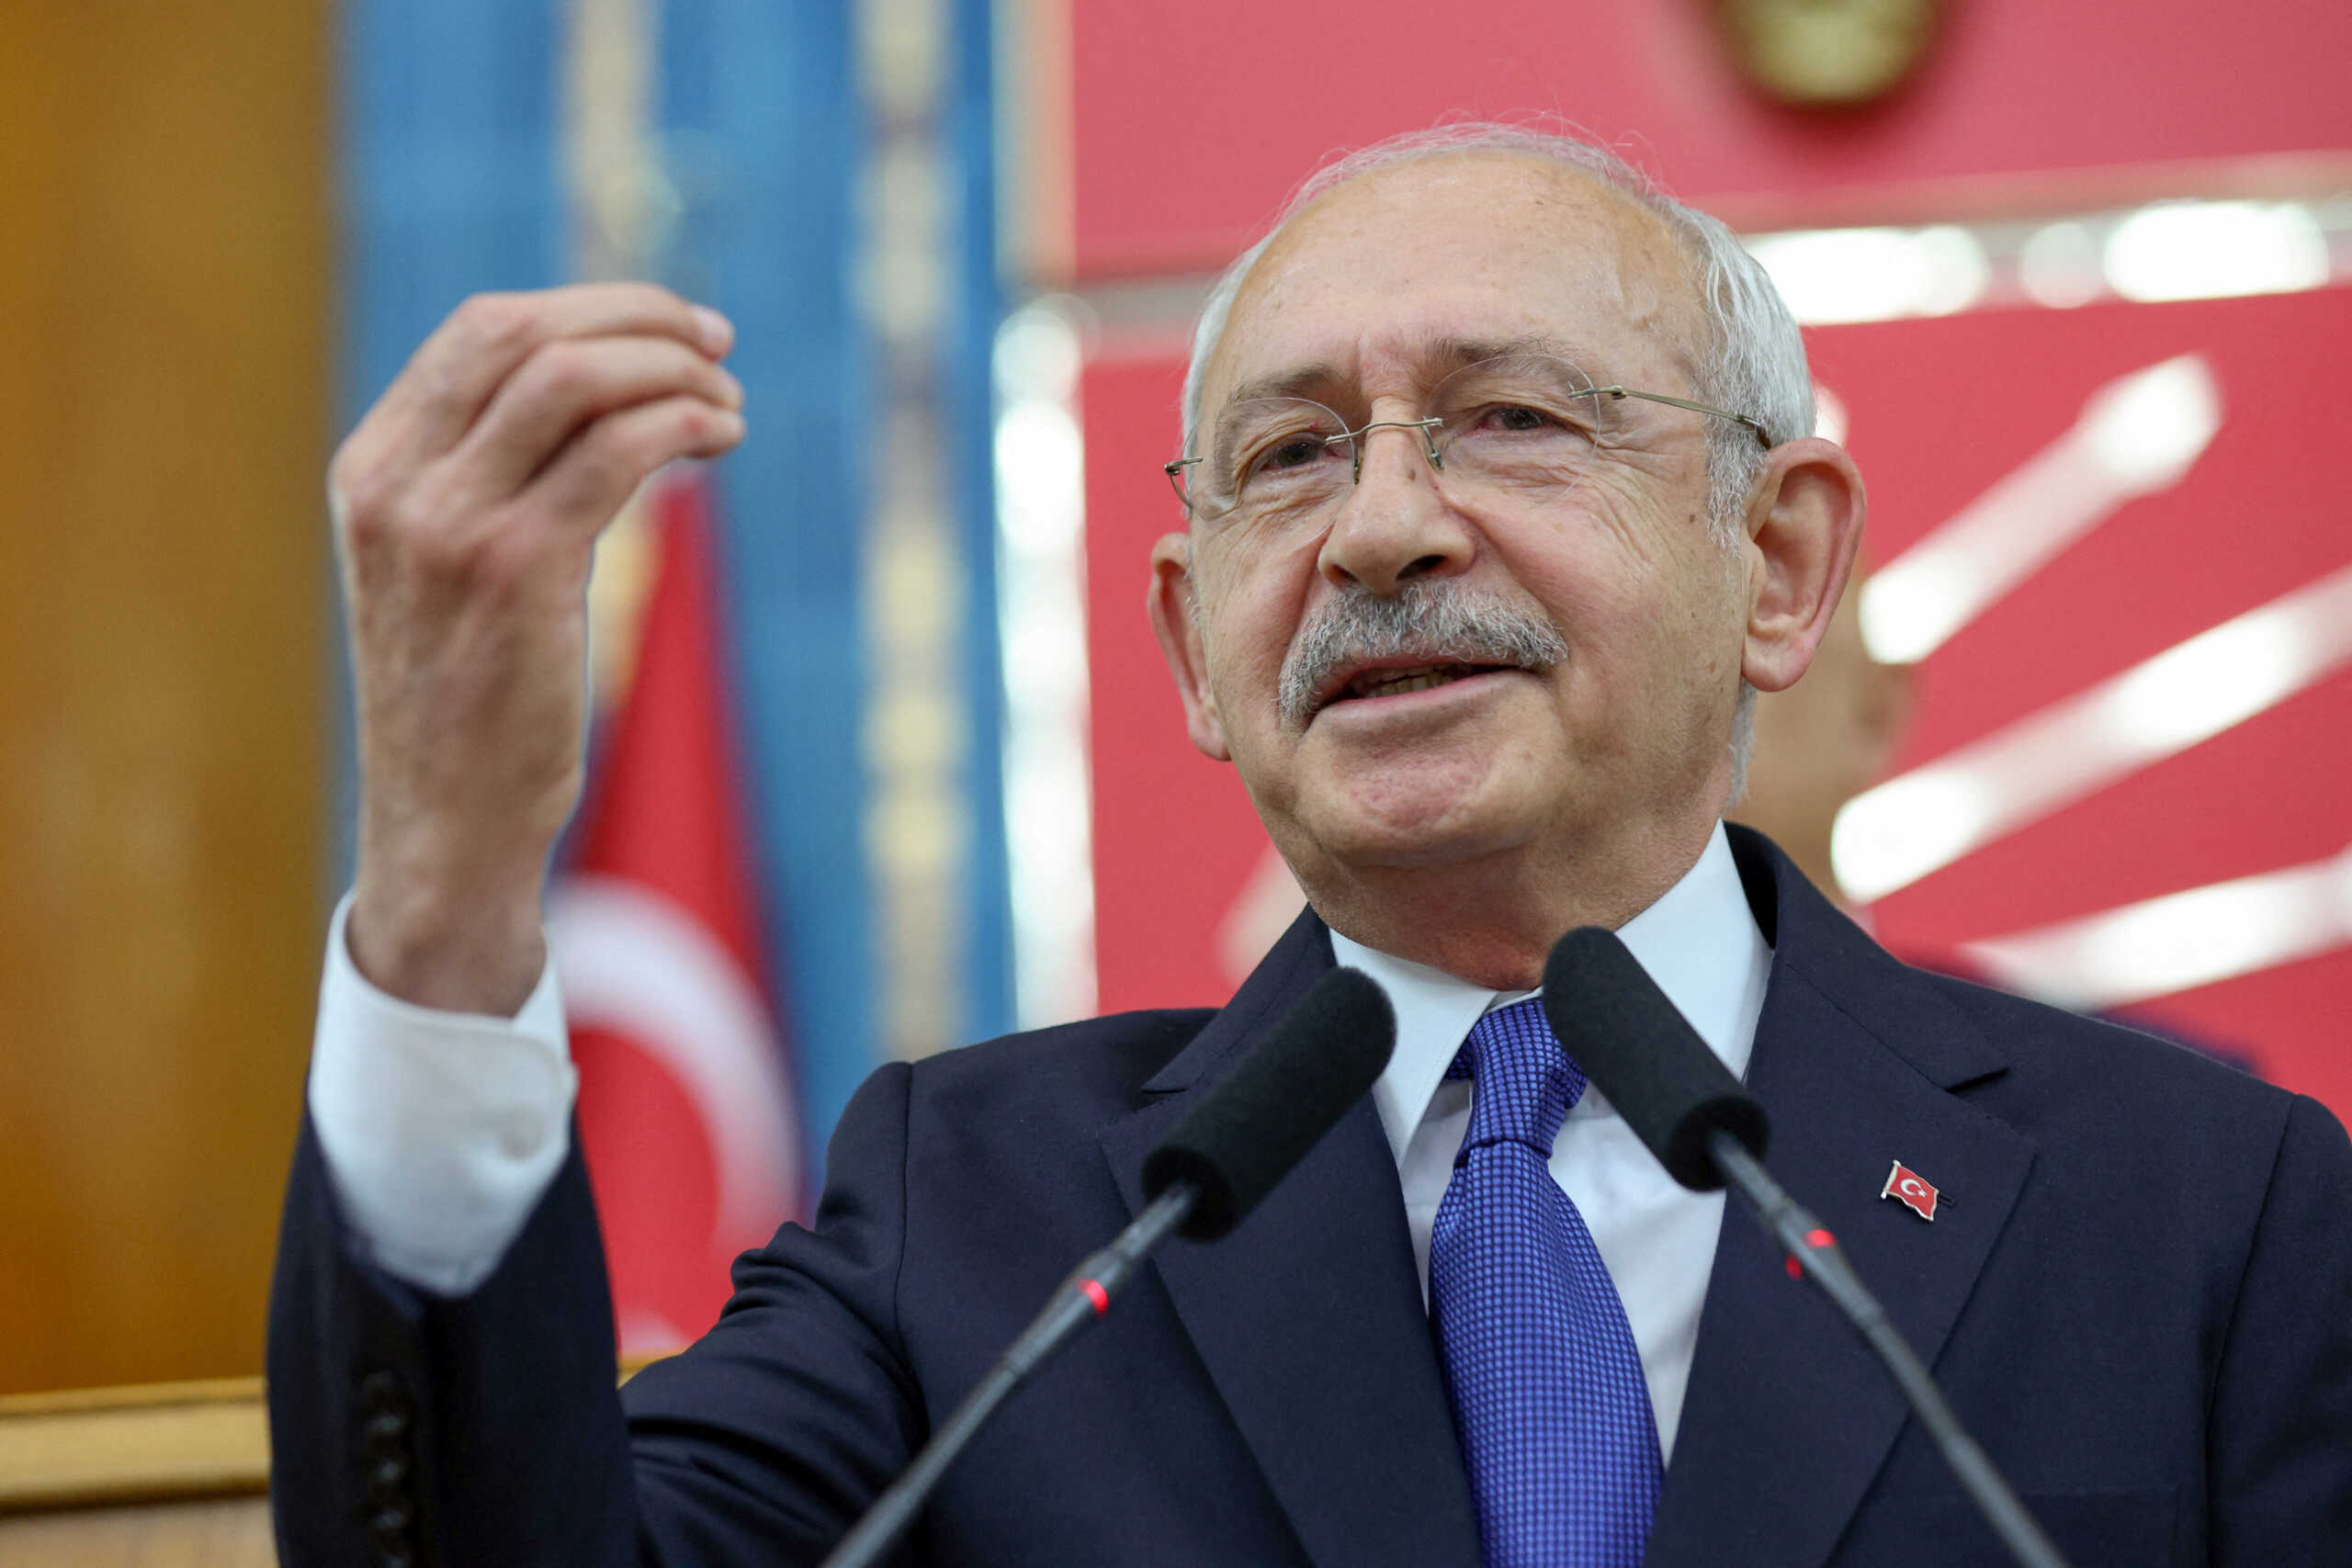 Εκλογές στην Τουρκία: Ο Κιλιτσντάρογλου θα είναι ο υποψήφιος απέναντι στον Ερντογάν